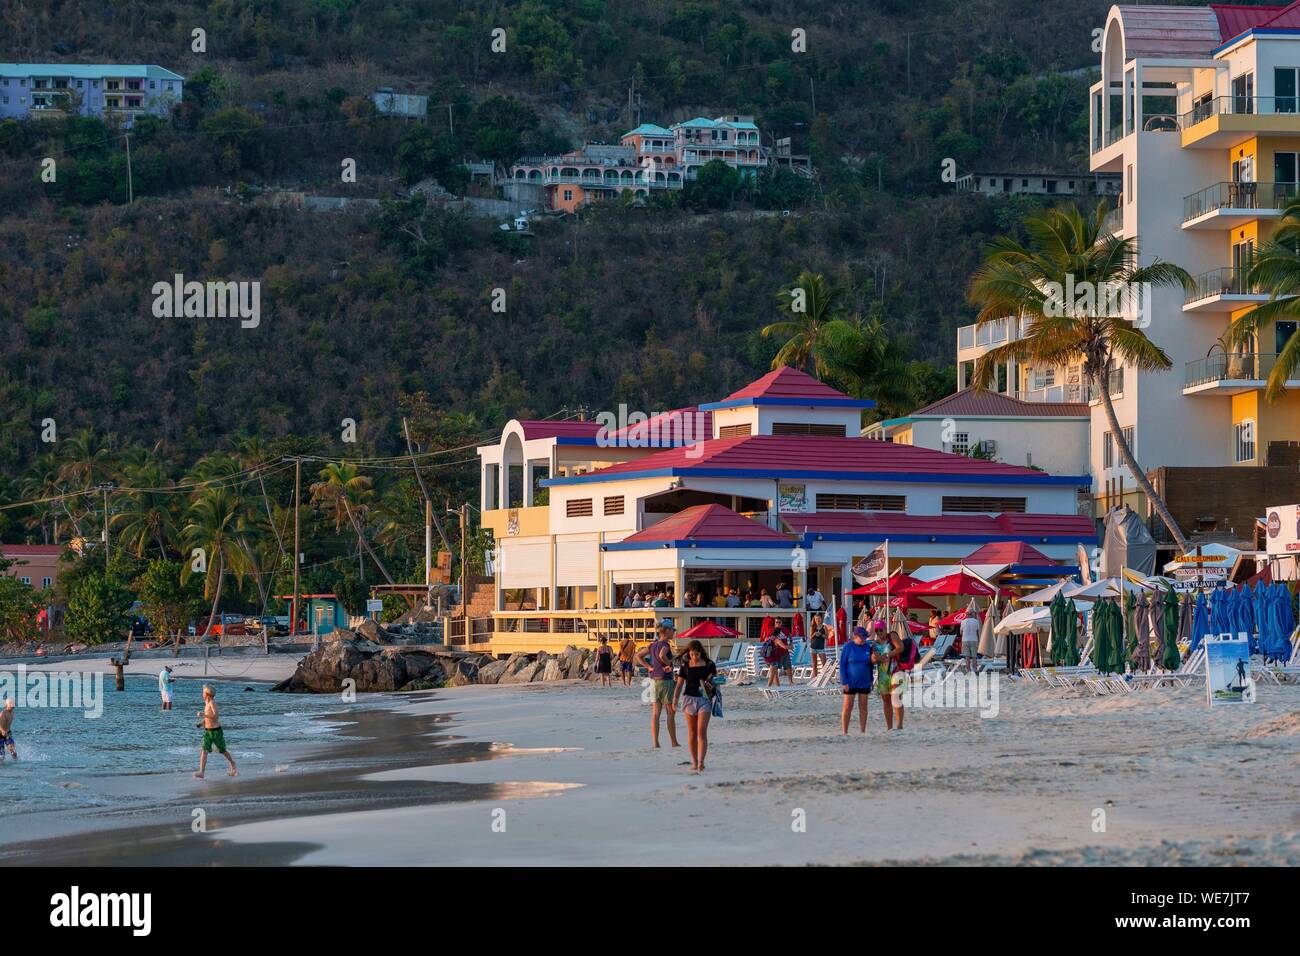 West Indies, British Virgin Islands, Tortola Island, auf Cane Garden Bay im letzten end-of-day Badestrand, im Hintergrund die berühmte Quitos bar Stockfoto